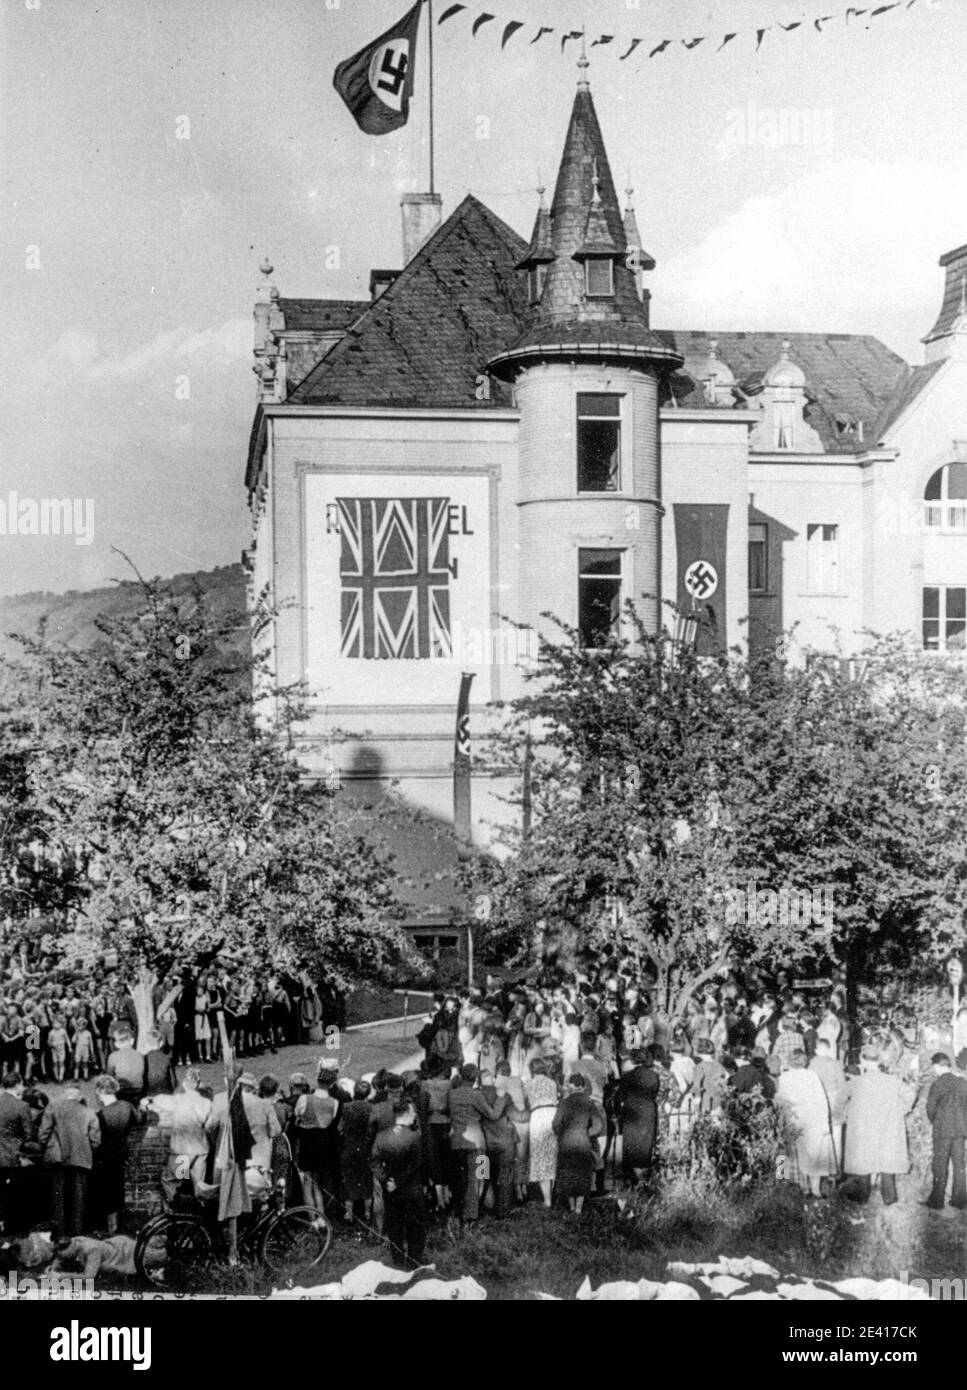 Das Dreeson Hotel in Bad Godesberg ist mit britischen und nazistischen Fahnen geschmückt, um das Treffen zwischen Neville Chamberlain, dem britischen Premierminister, und Adolf Hitler in Bezug auf Hitlers Forderungen an die Tschechoslowakei vorzubereiten. Hitler wollte Sudetenland aus der Tschechoslowakei annektieren. Stockfoto